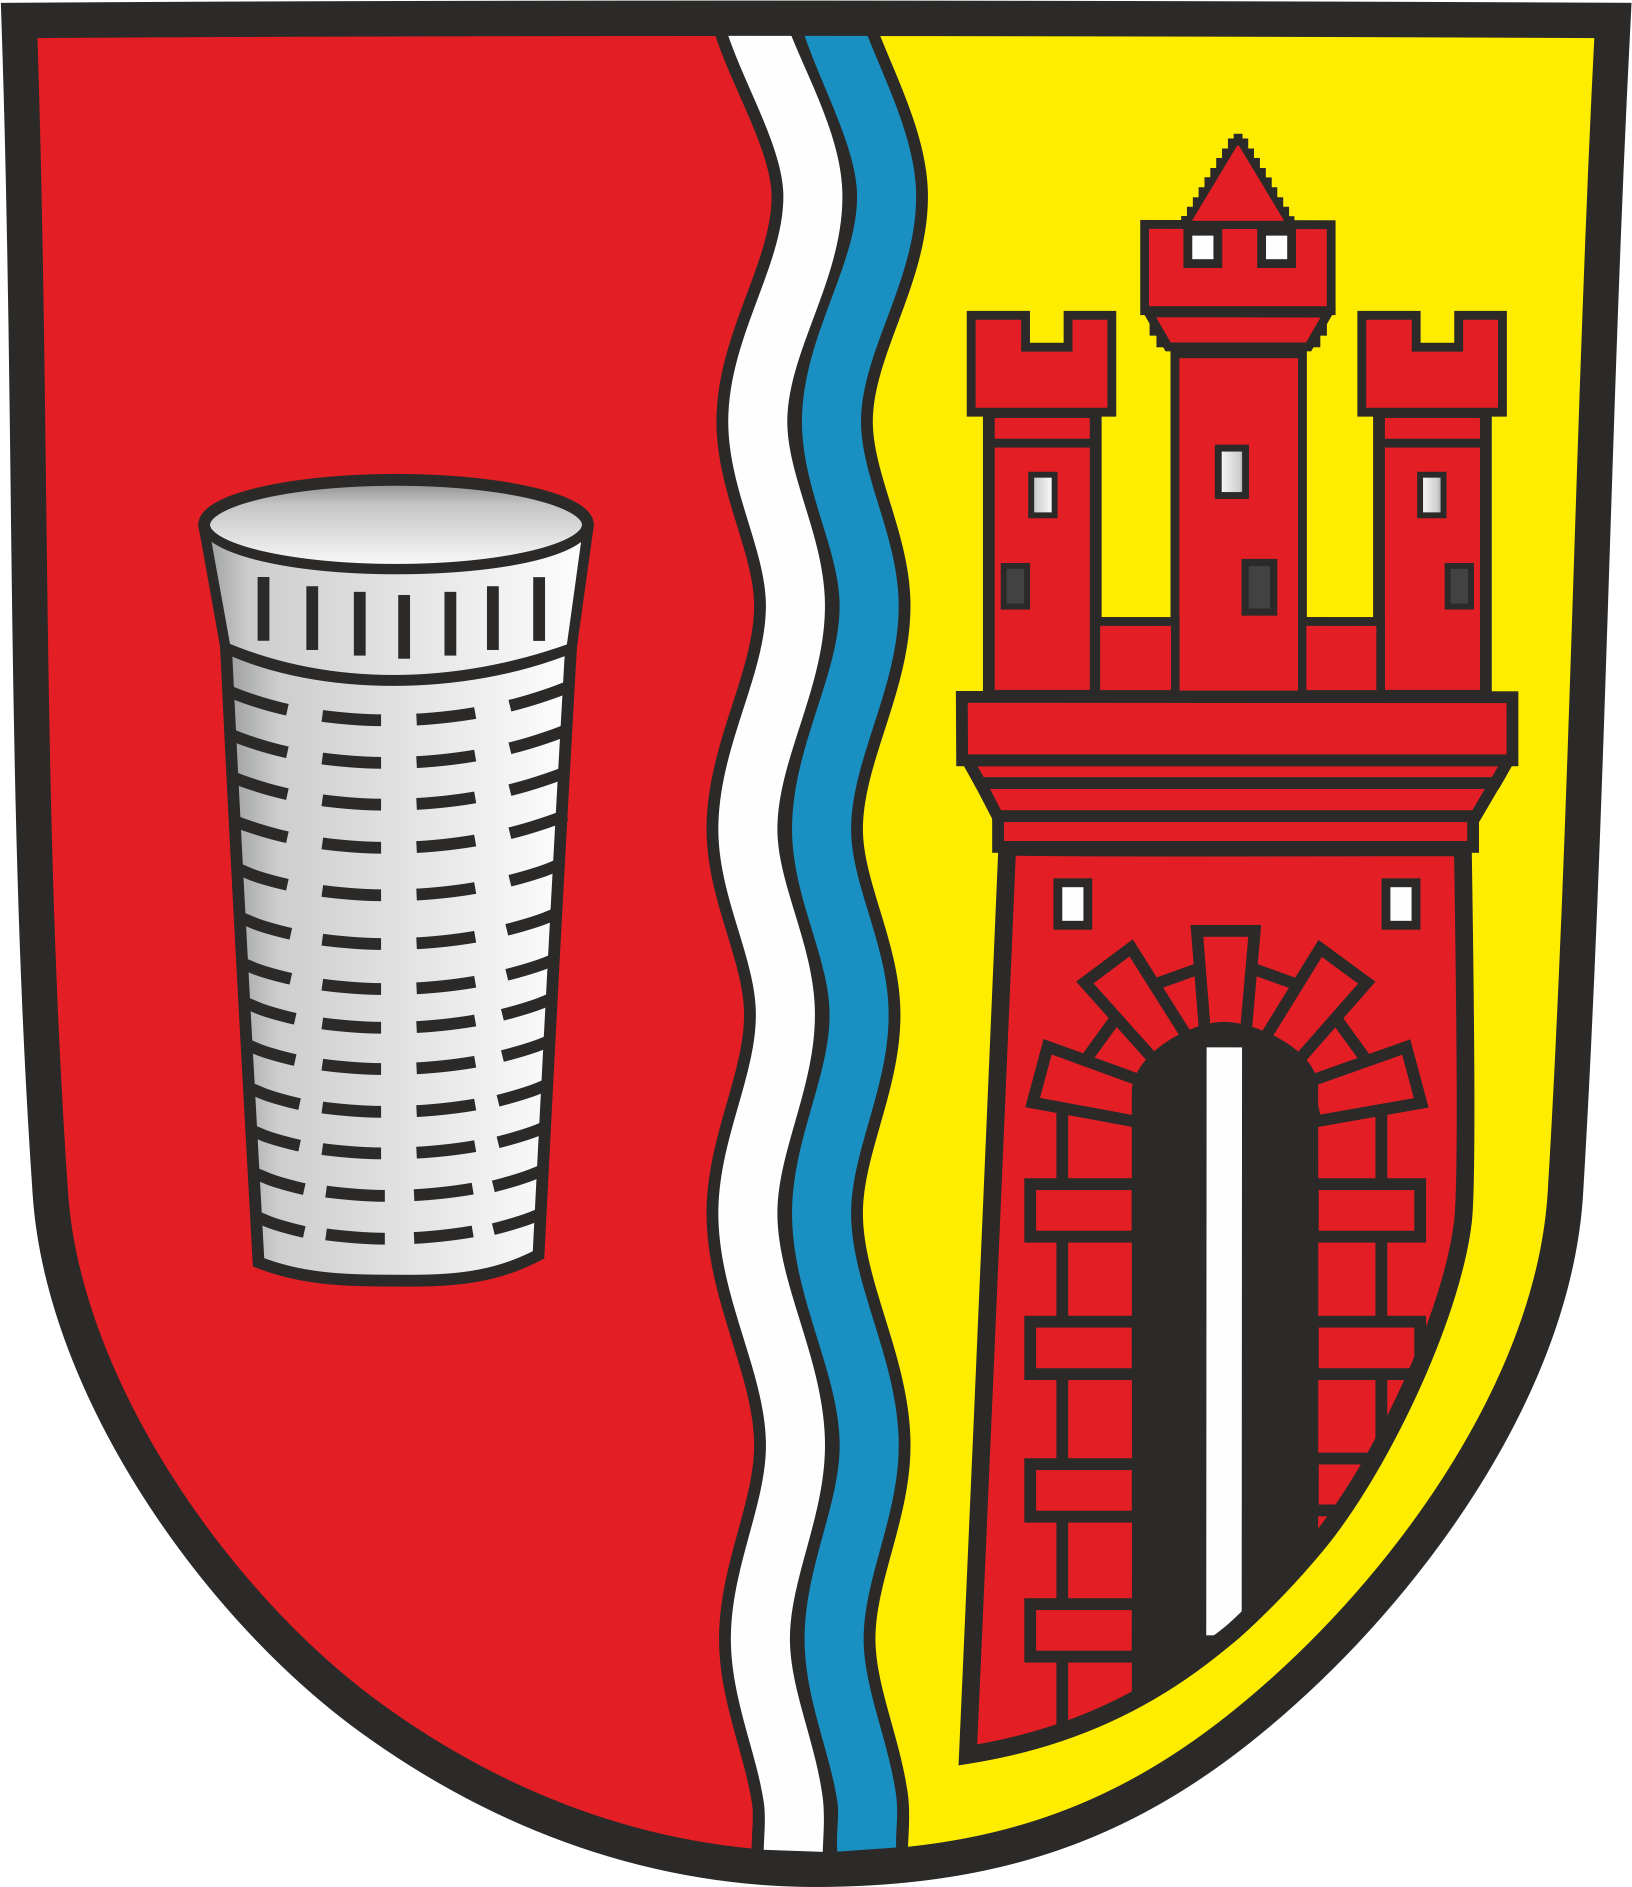 Wappen Kleinkahl